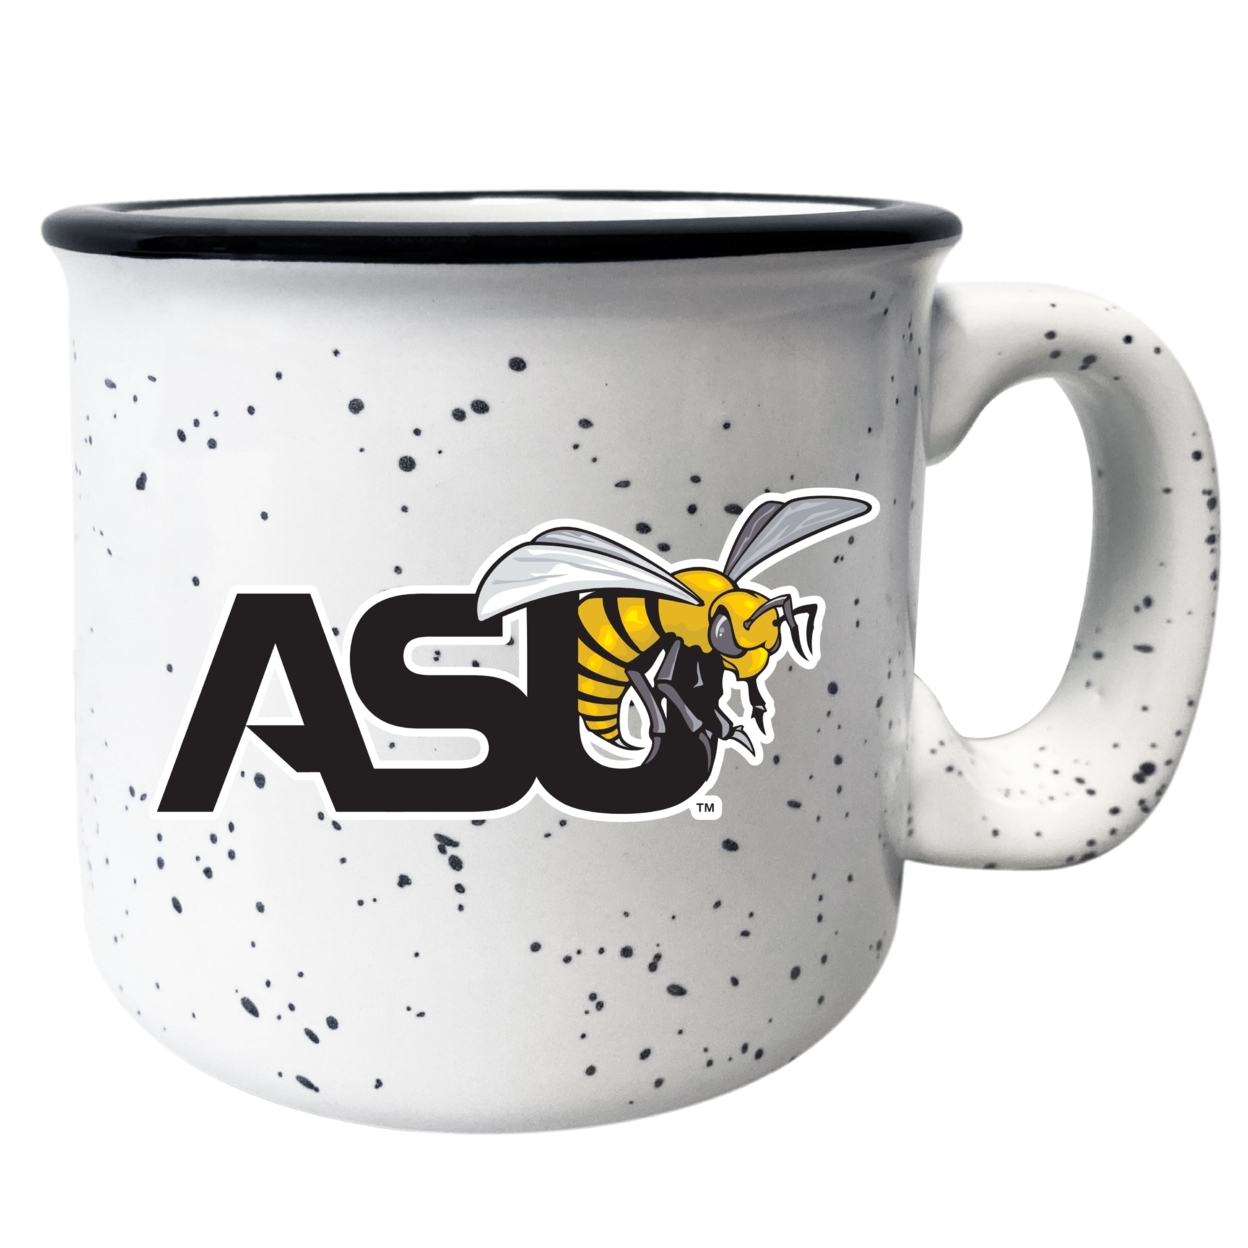 Alabama State University Speckled Ceramic Camper Coffee Mug - Choose Your Color - Grey